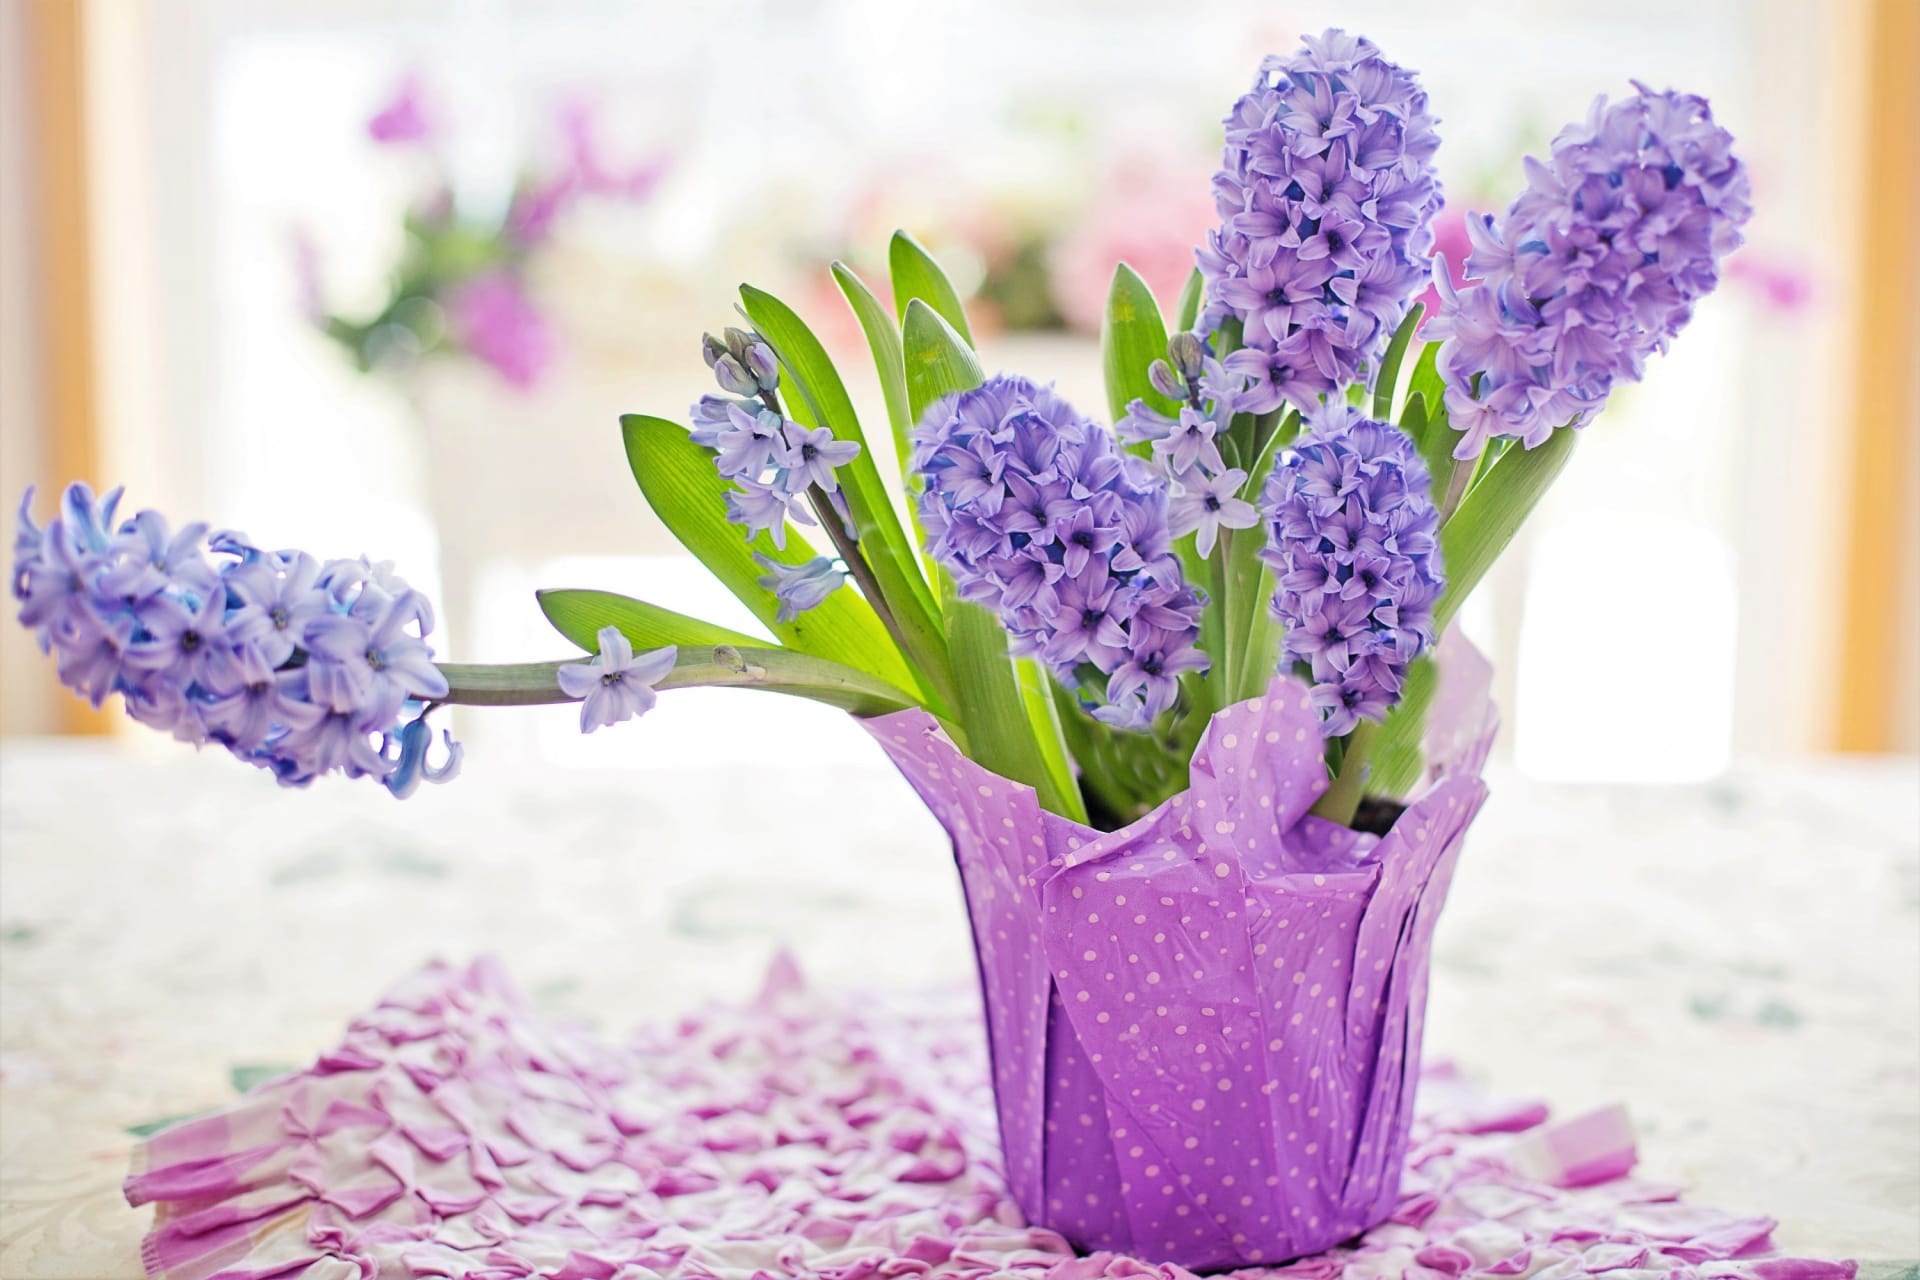 Hyacinty v květináči: v bytě při teplotě 16 až 20  stupňů Celsia  vydrží květ svěží až 3 týdny, při vyšších teplotách kvetou jen 1 až 2 týdny